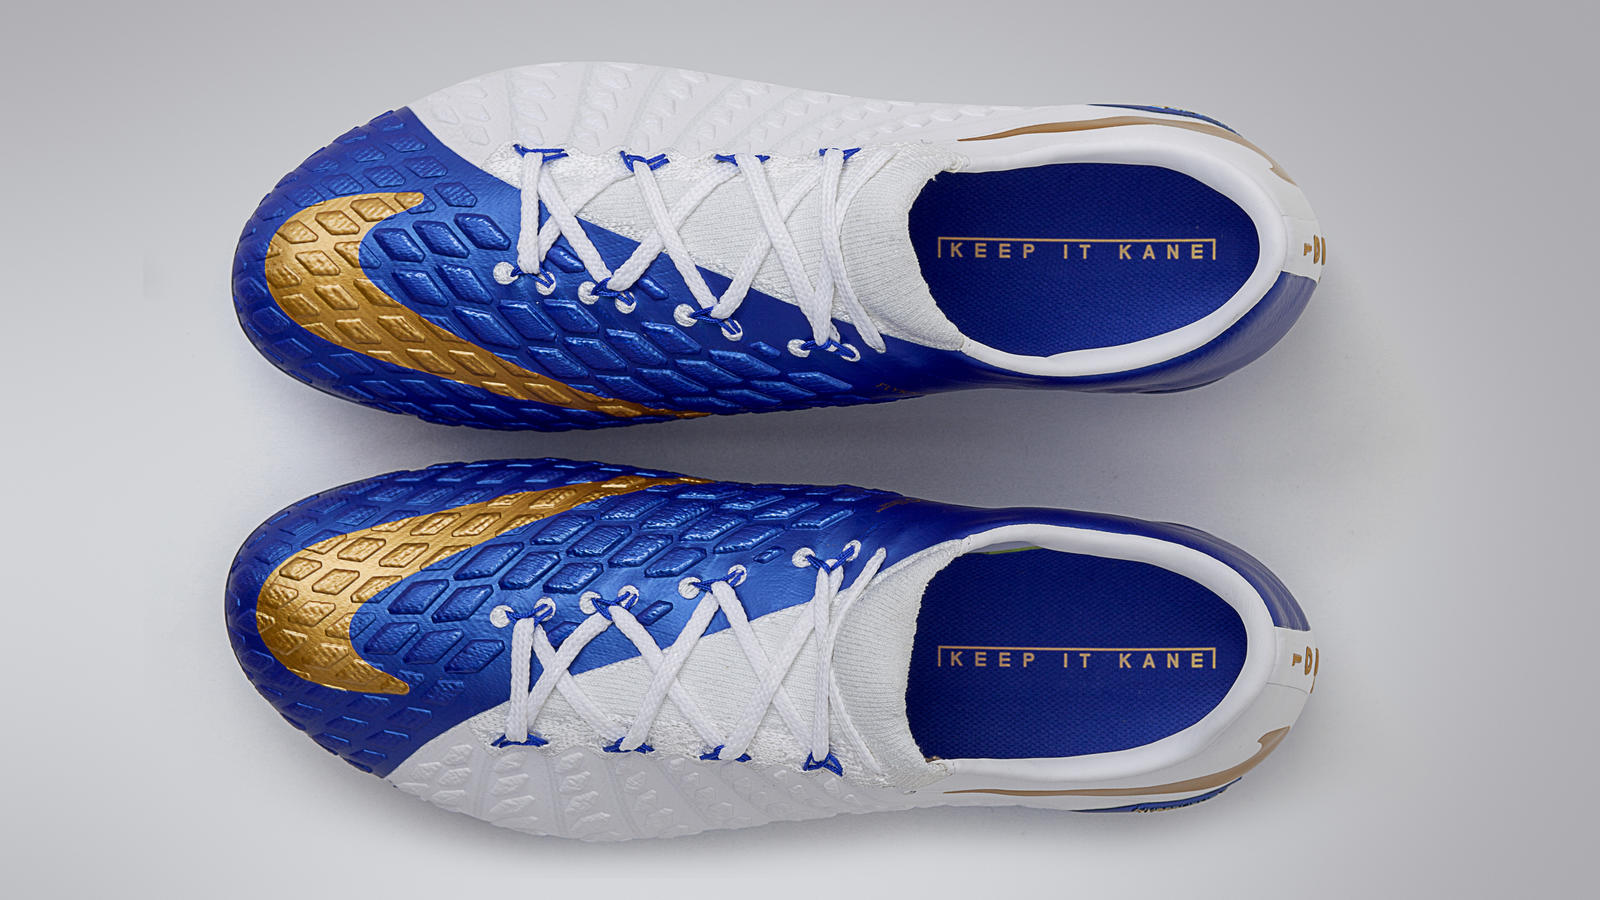 Botines Nike Hypervenom Phantom 3 Azules F煤tbol en